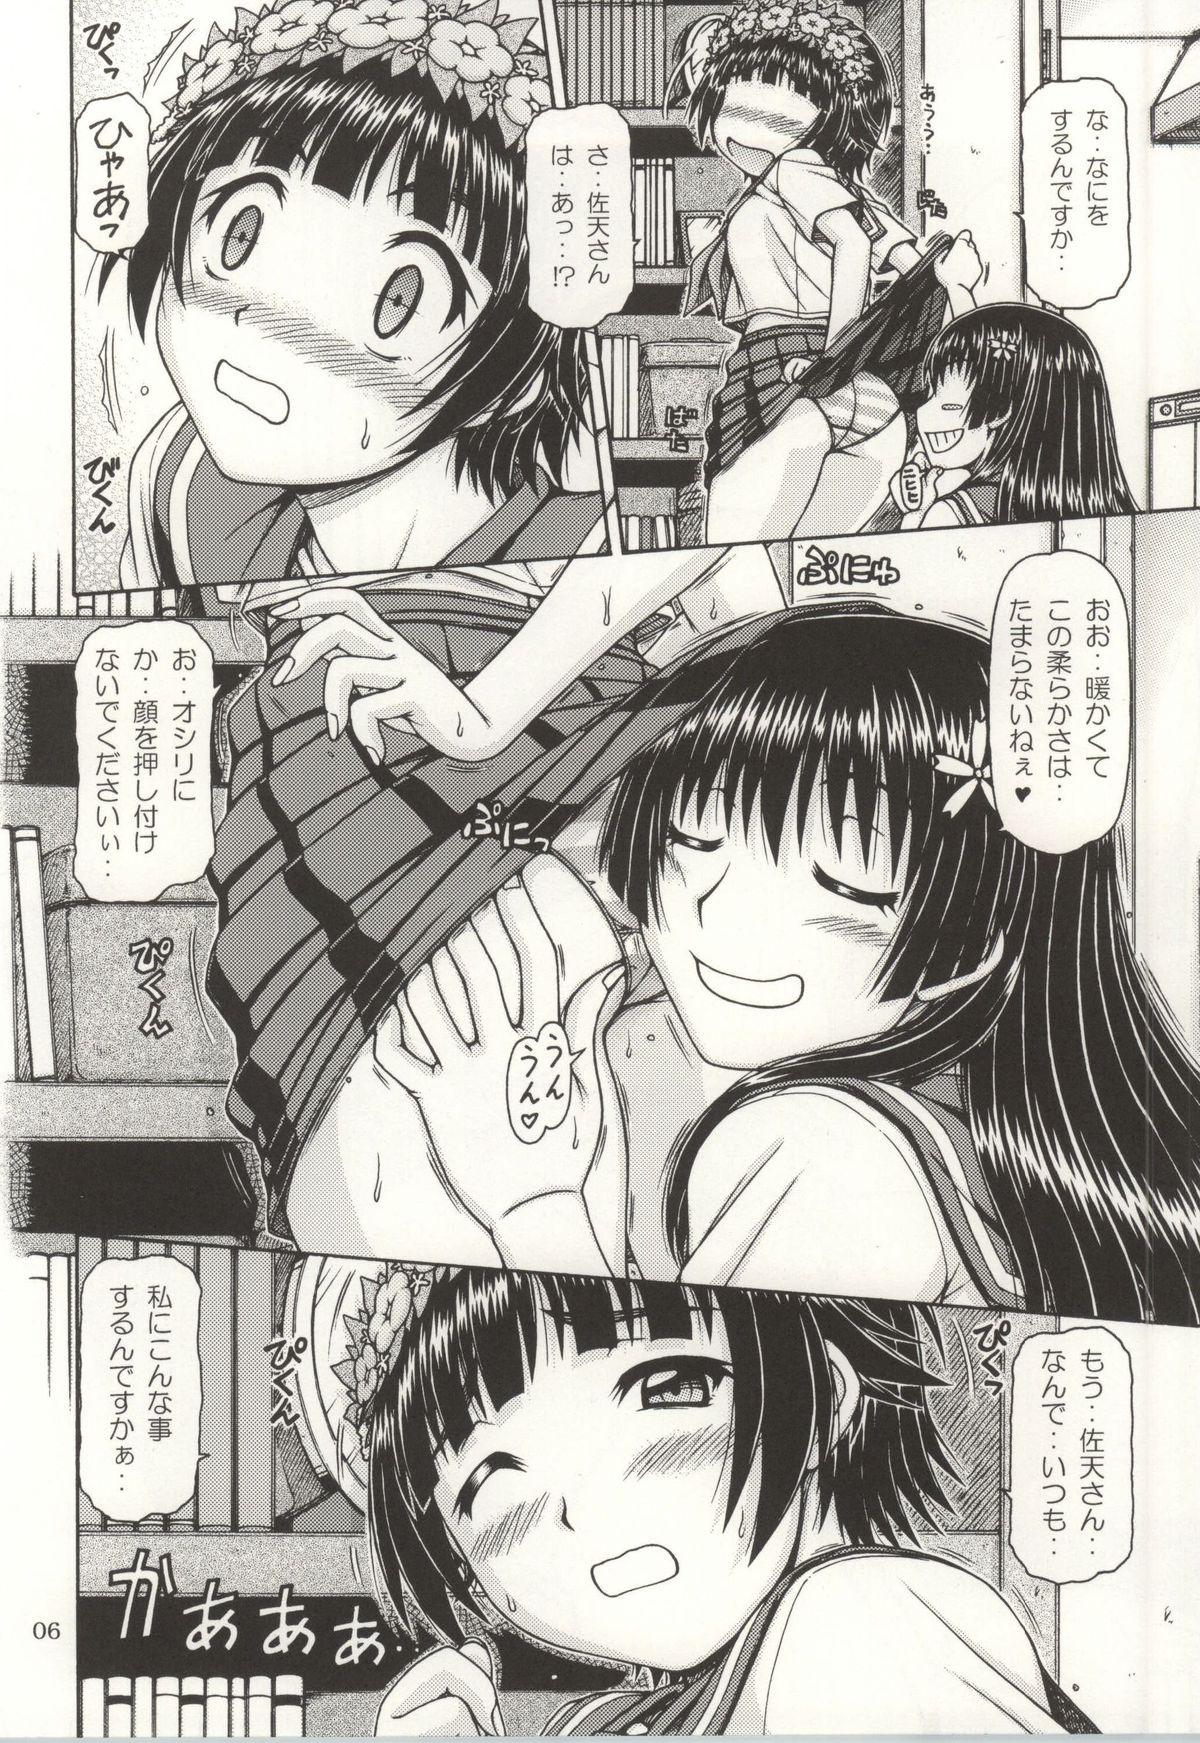 Hotporn ONE-SEVEN+ Vol.01 - Toaru kagaku no railgun Toaru majutsu no index Tit - Page 4